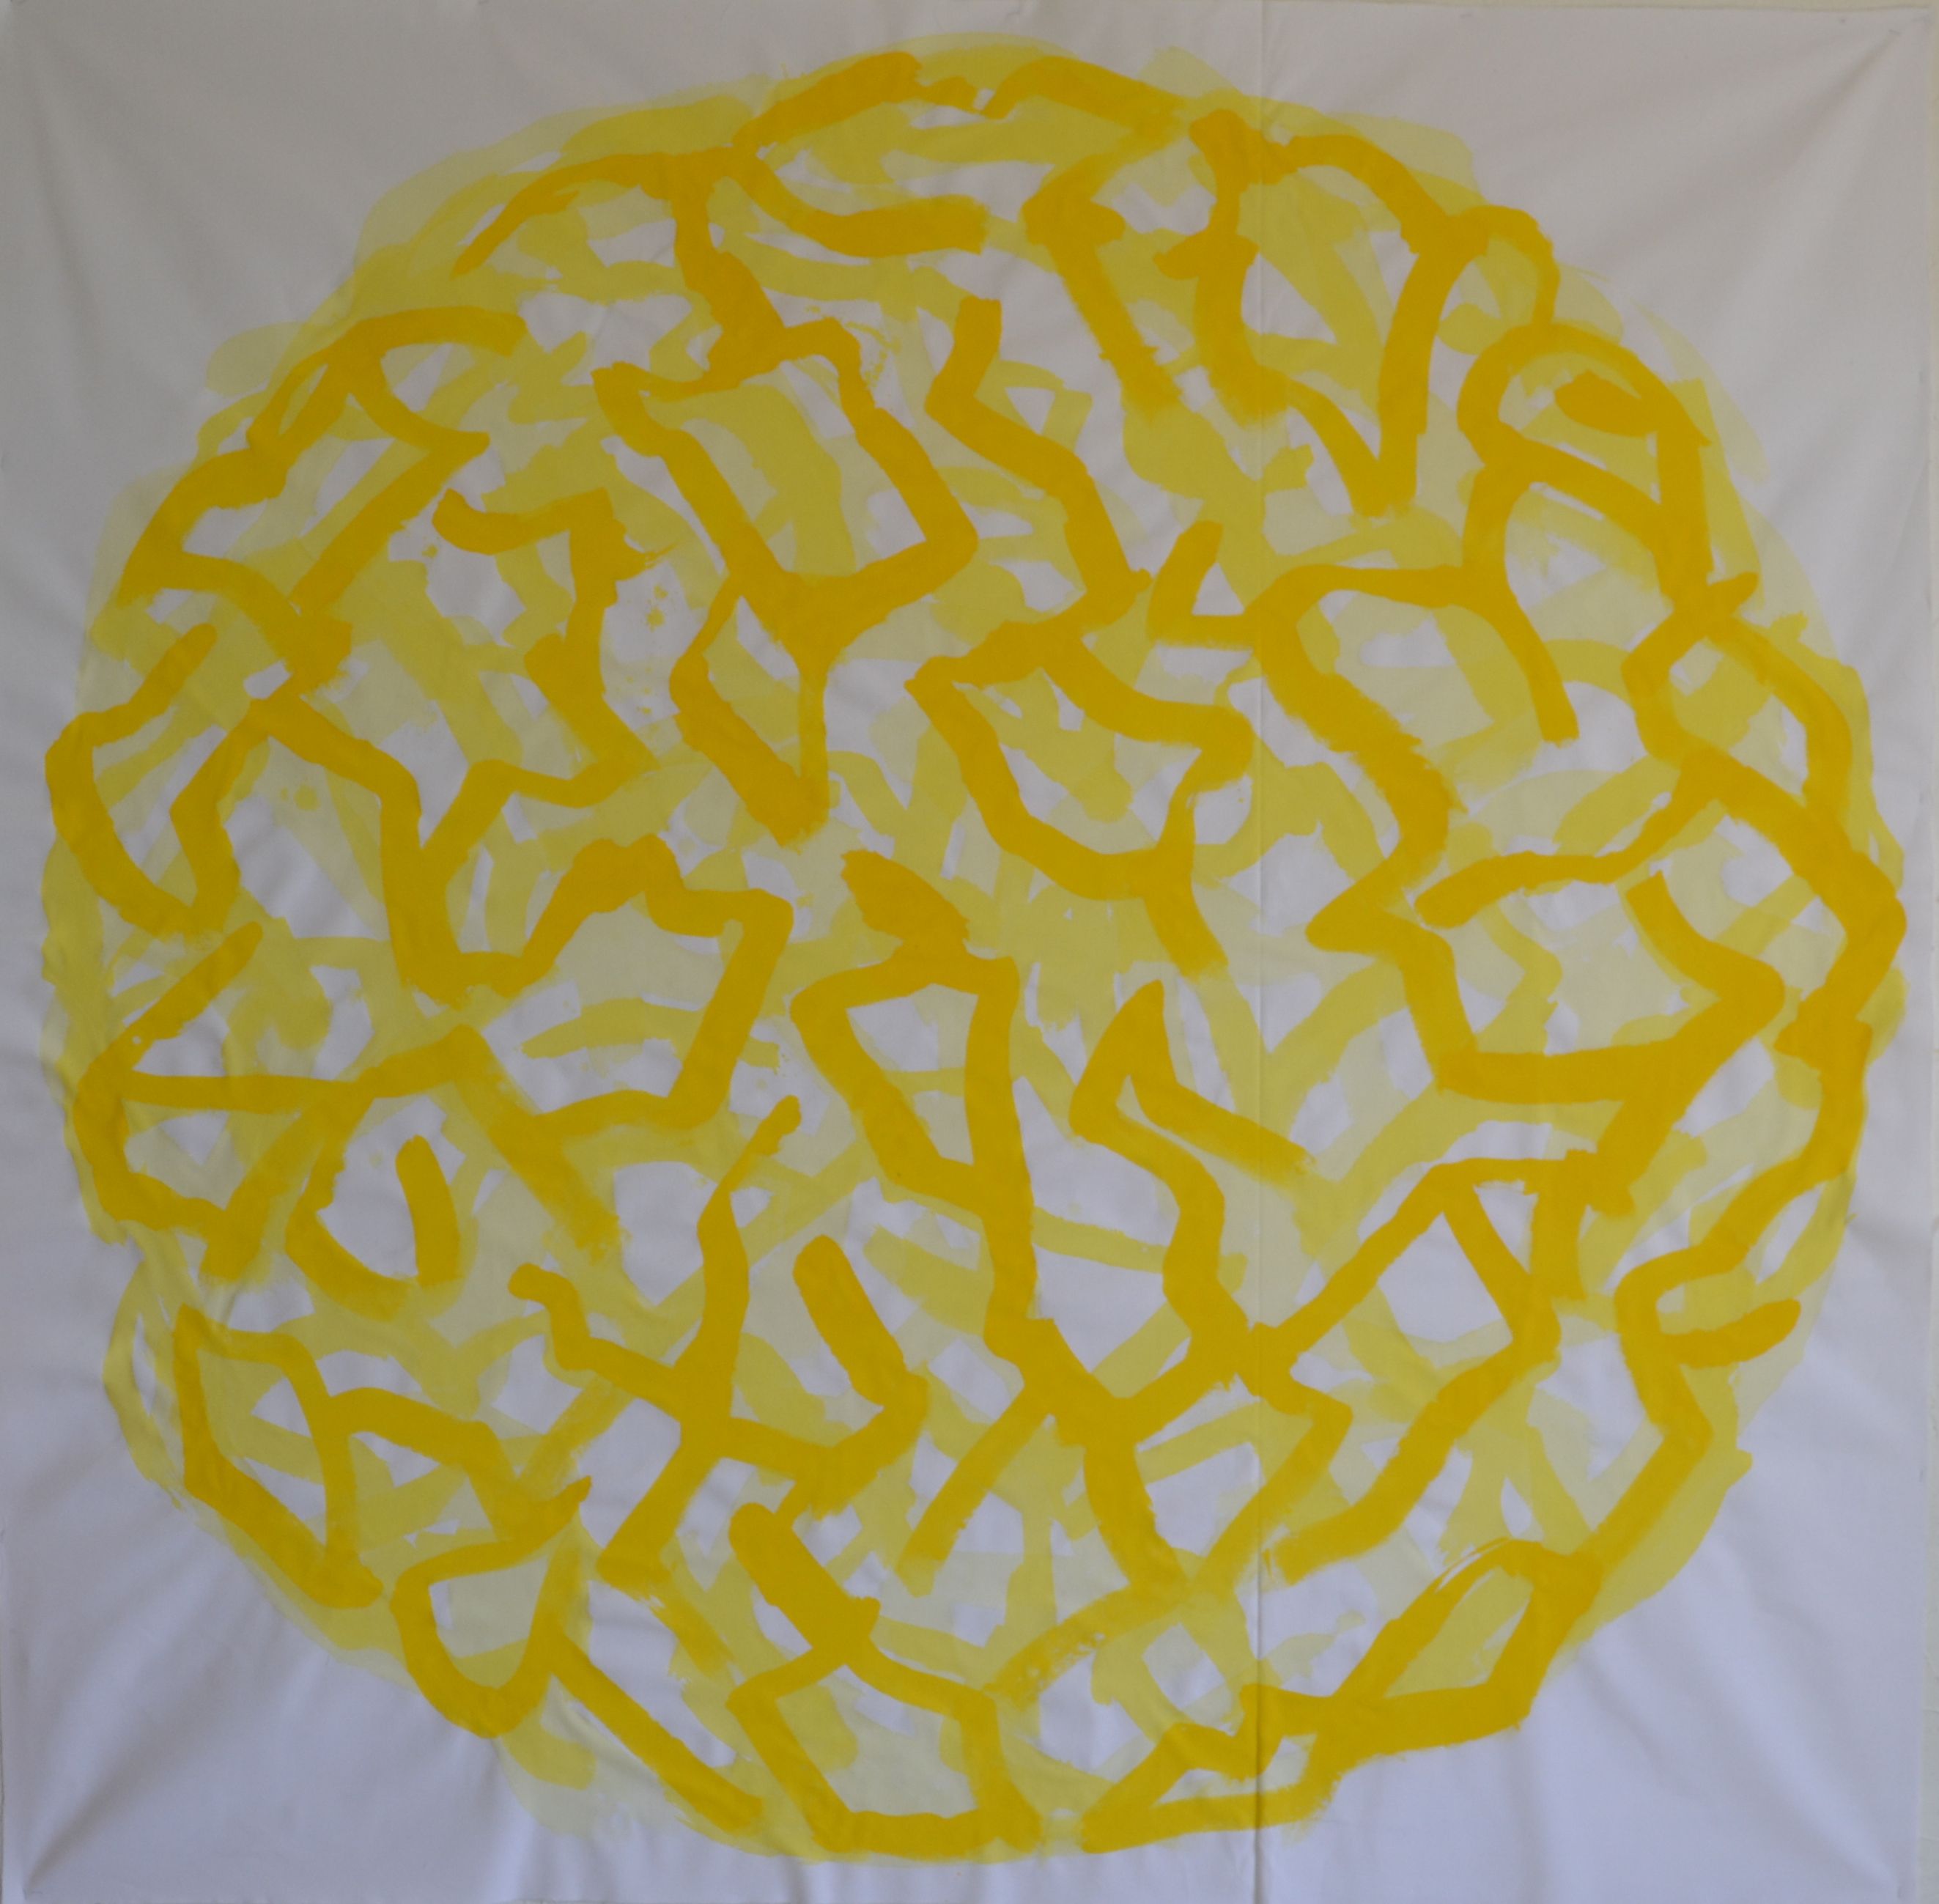 Mappemonde Peinture, "Terre solaire 1", acrylique sur tissu libre, 210 x 210 cm